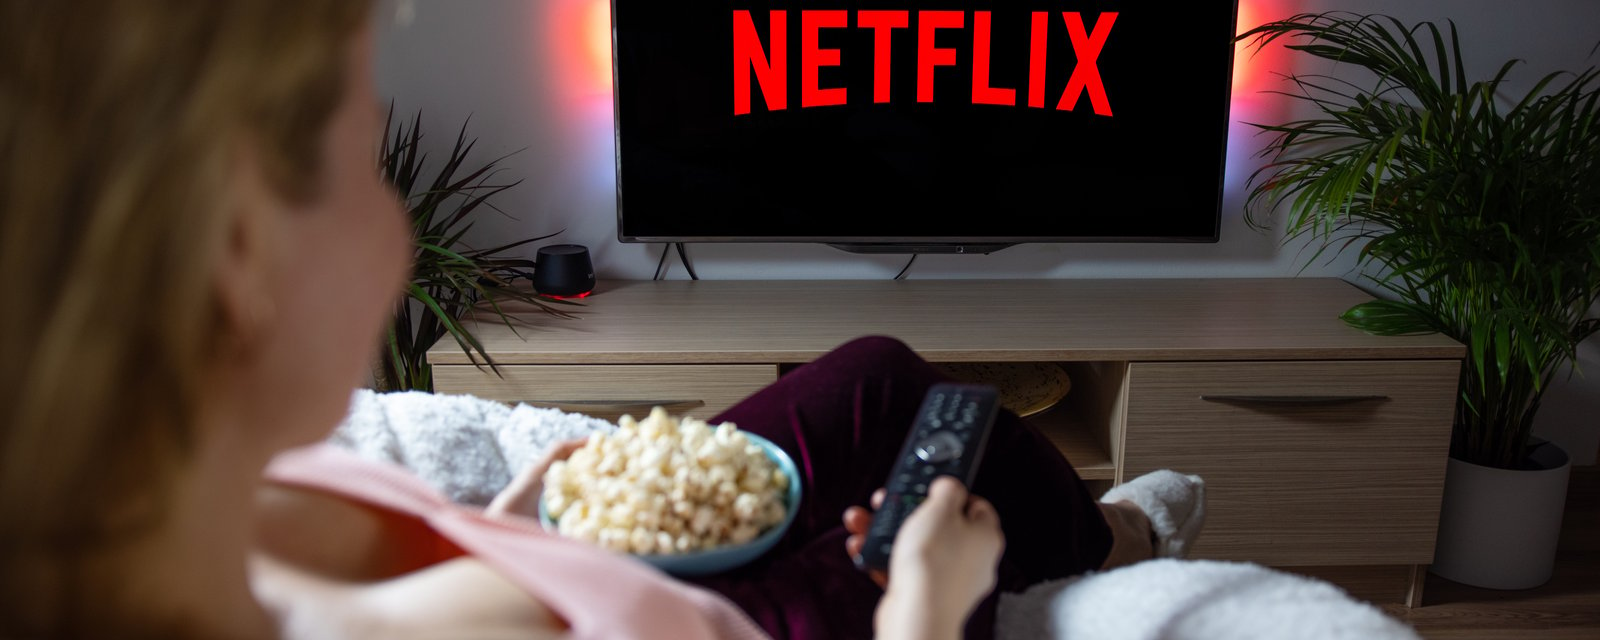 Le PDG de Netflix confirme le pire cauchemar pour les utilisateurs.